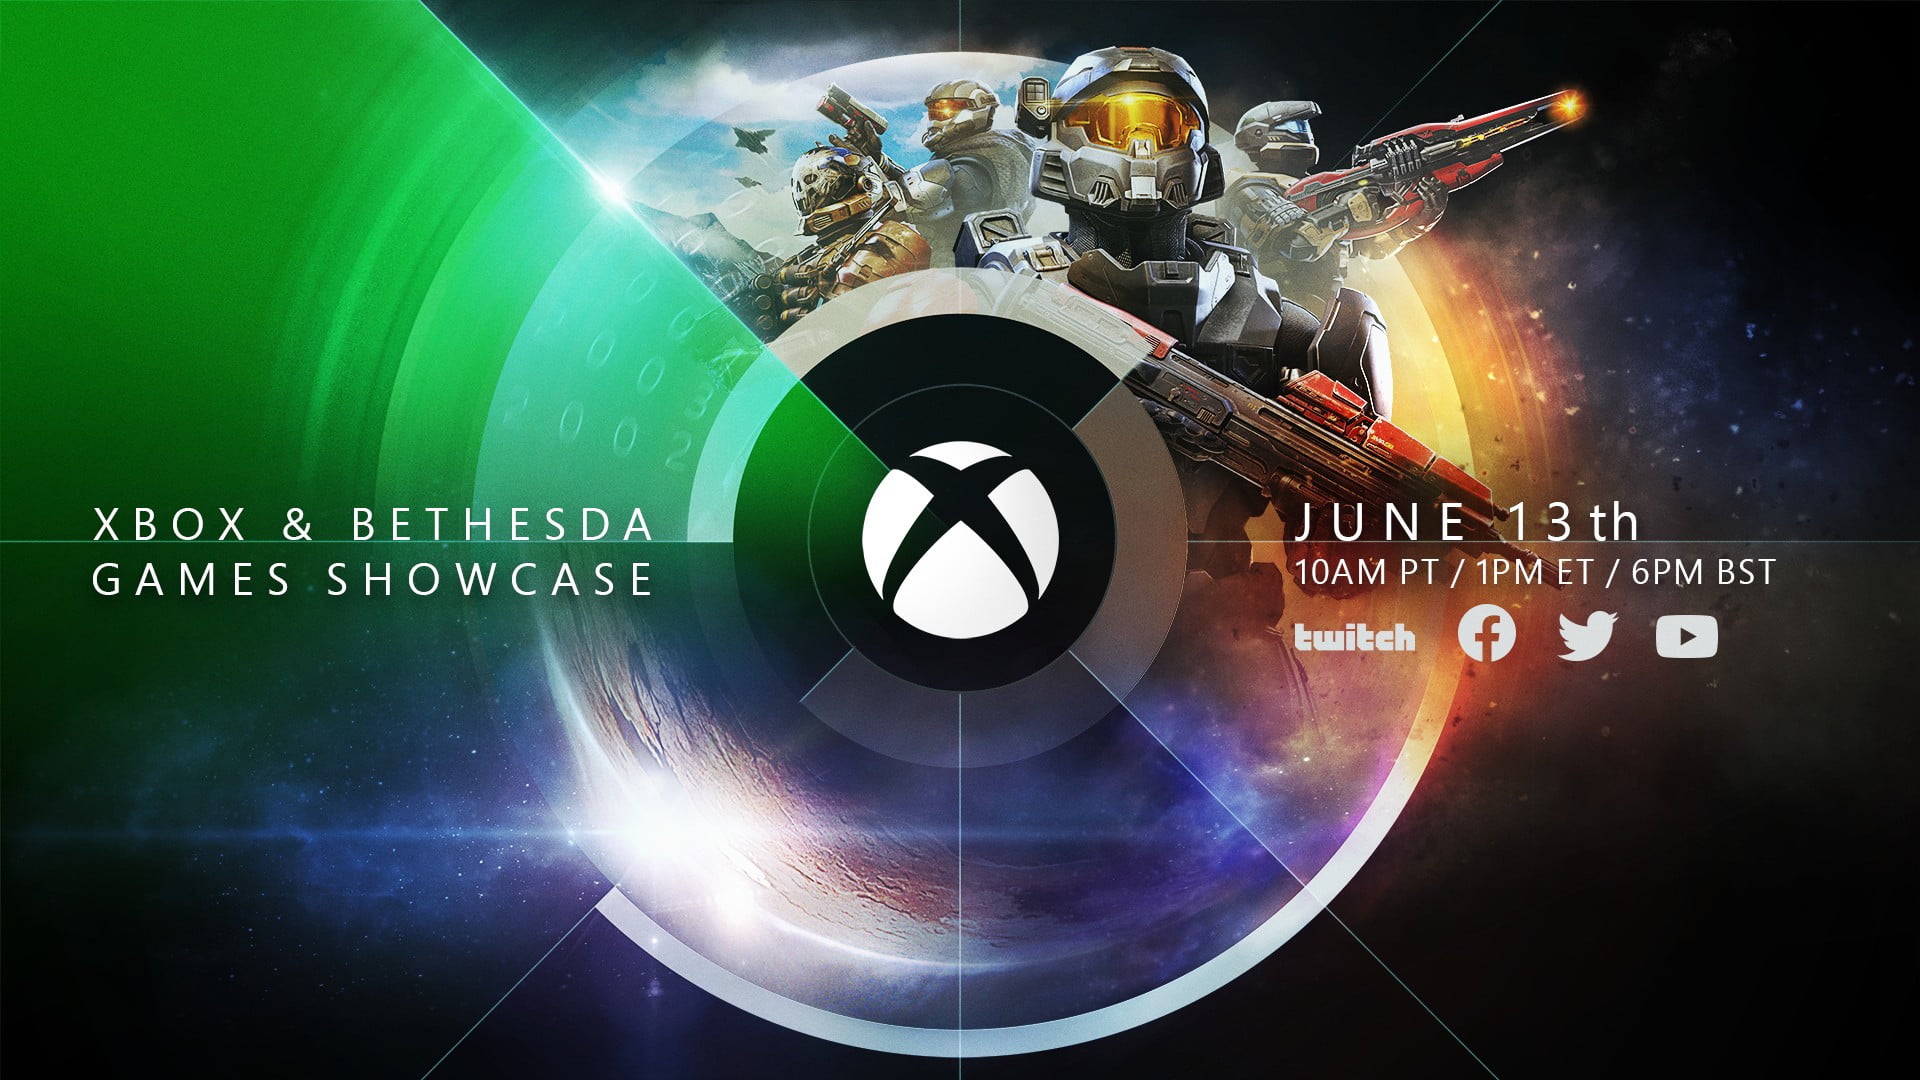 Imagen de presentación del evento del E3 de Xbox y Bethesda